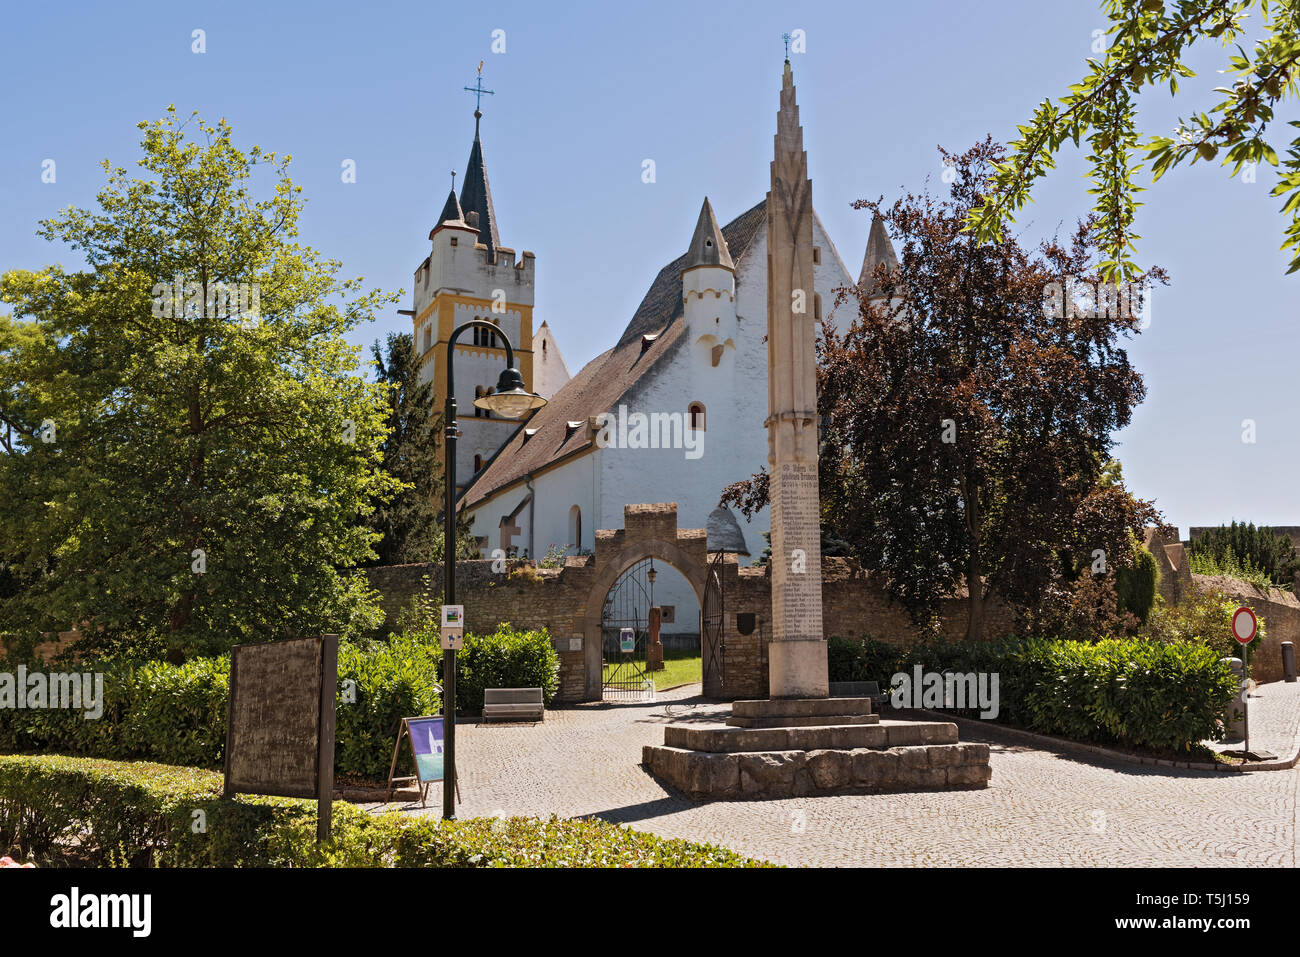 Iglesia del castillo con la muralla medieval de la ciudad en la ciudad de ober ingelheim rheinhessen Renania Palatinado alemania Foto de stock